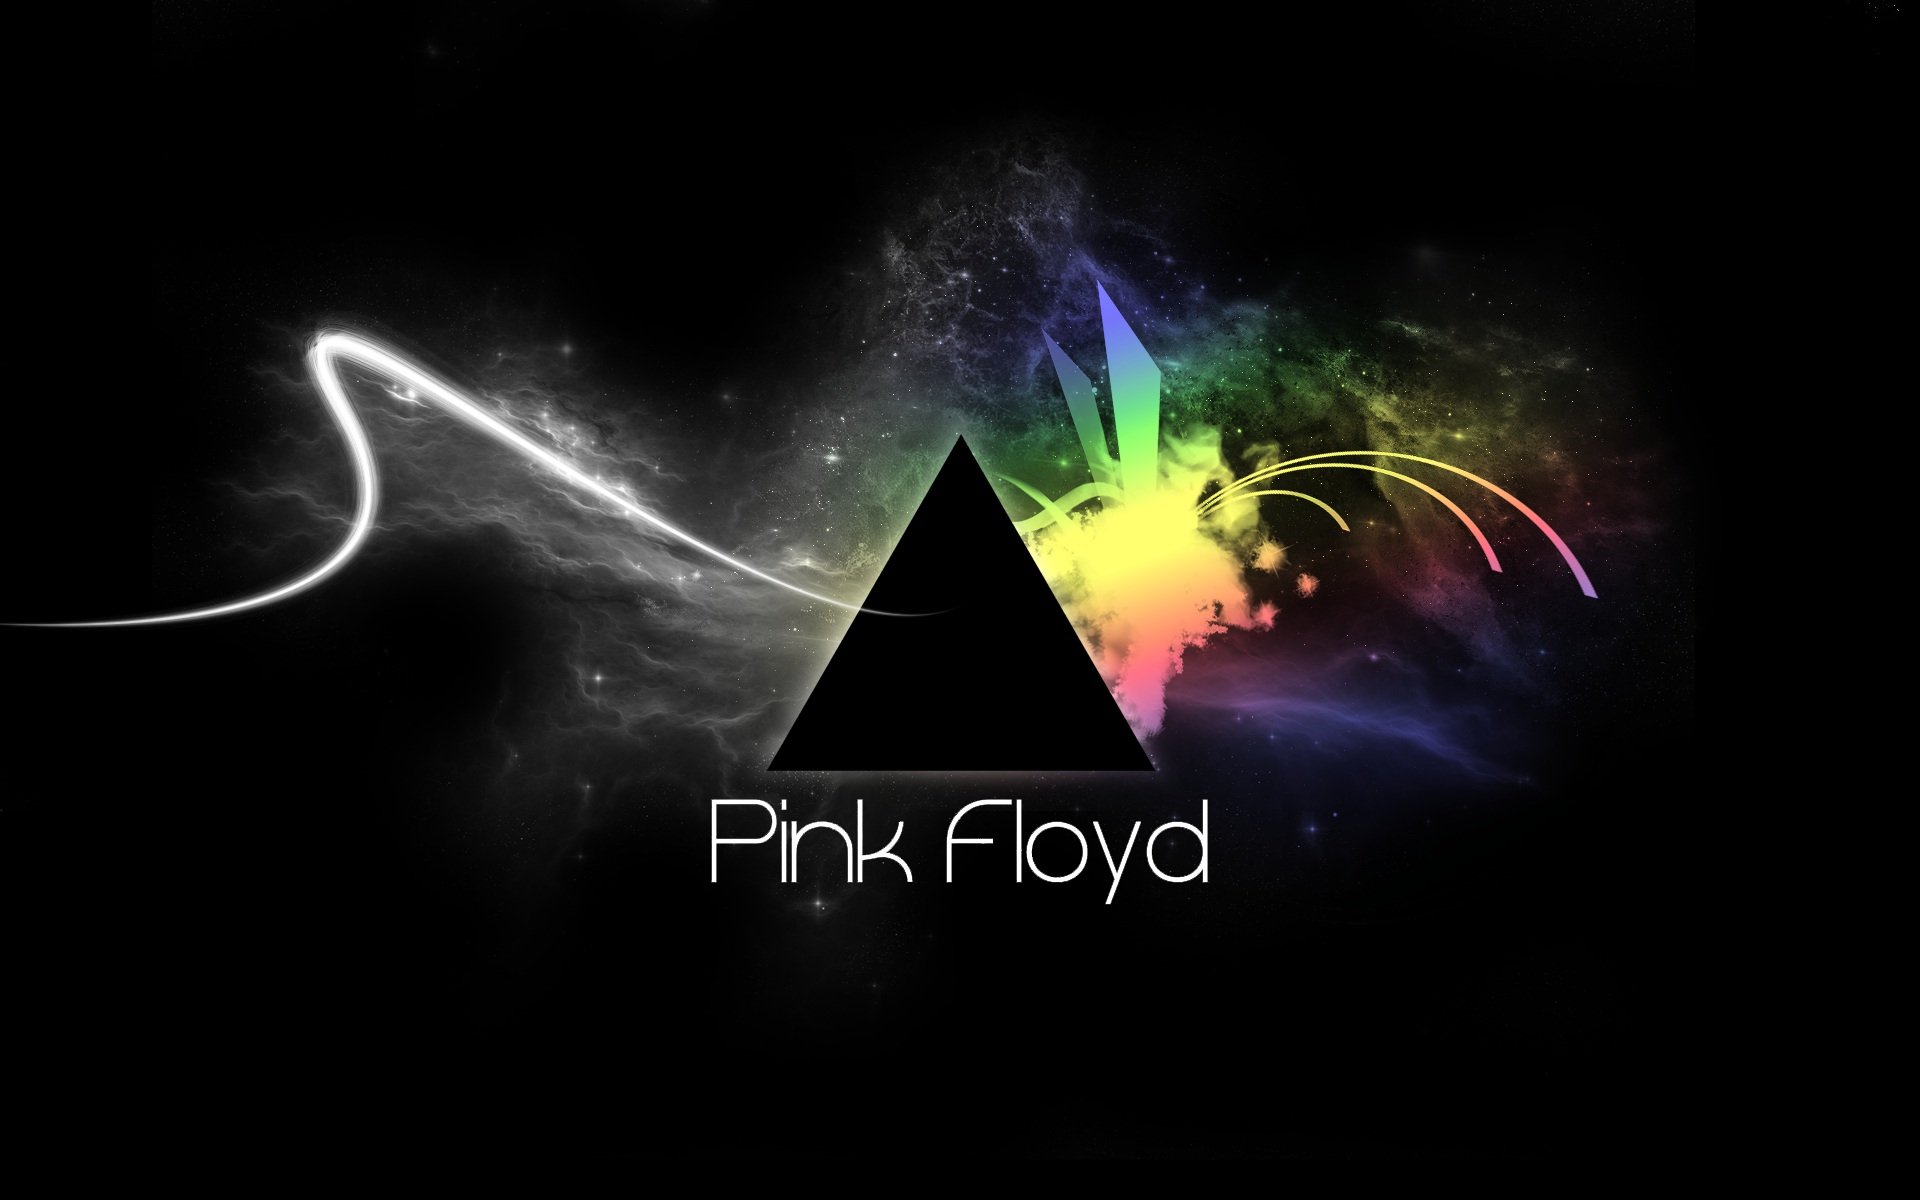 45+] Pink Floyd HD Wallpapers 1080p - WallpaperSafari